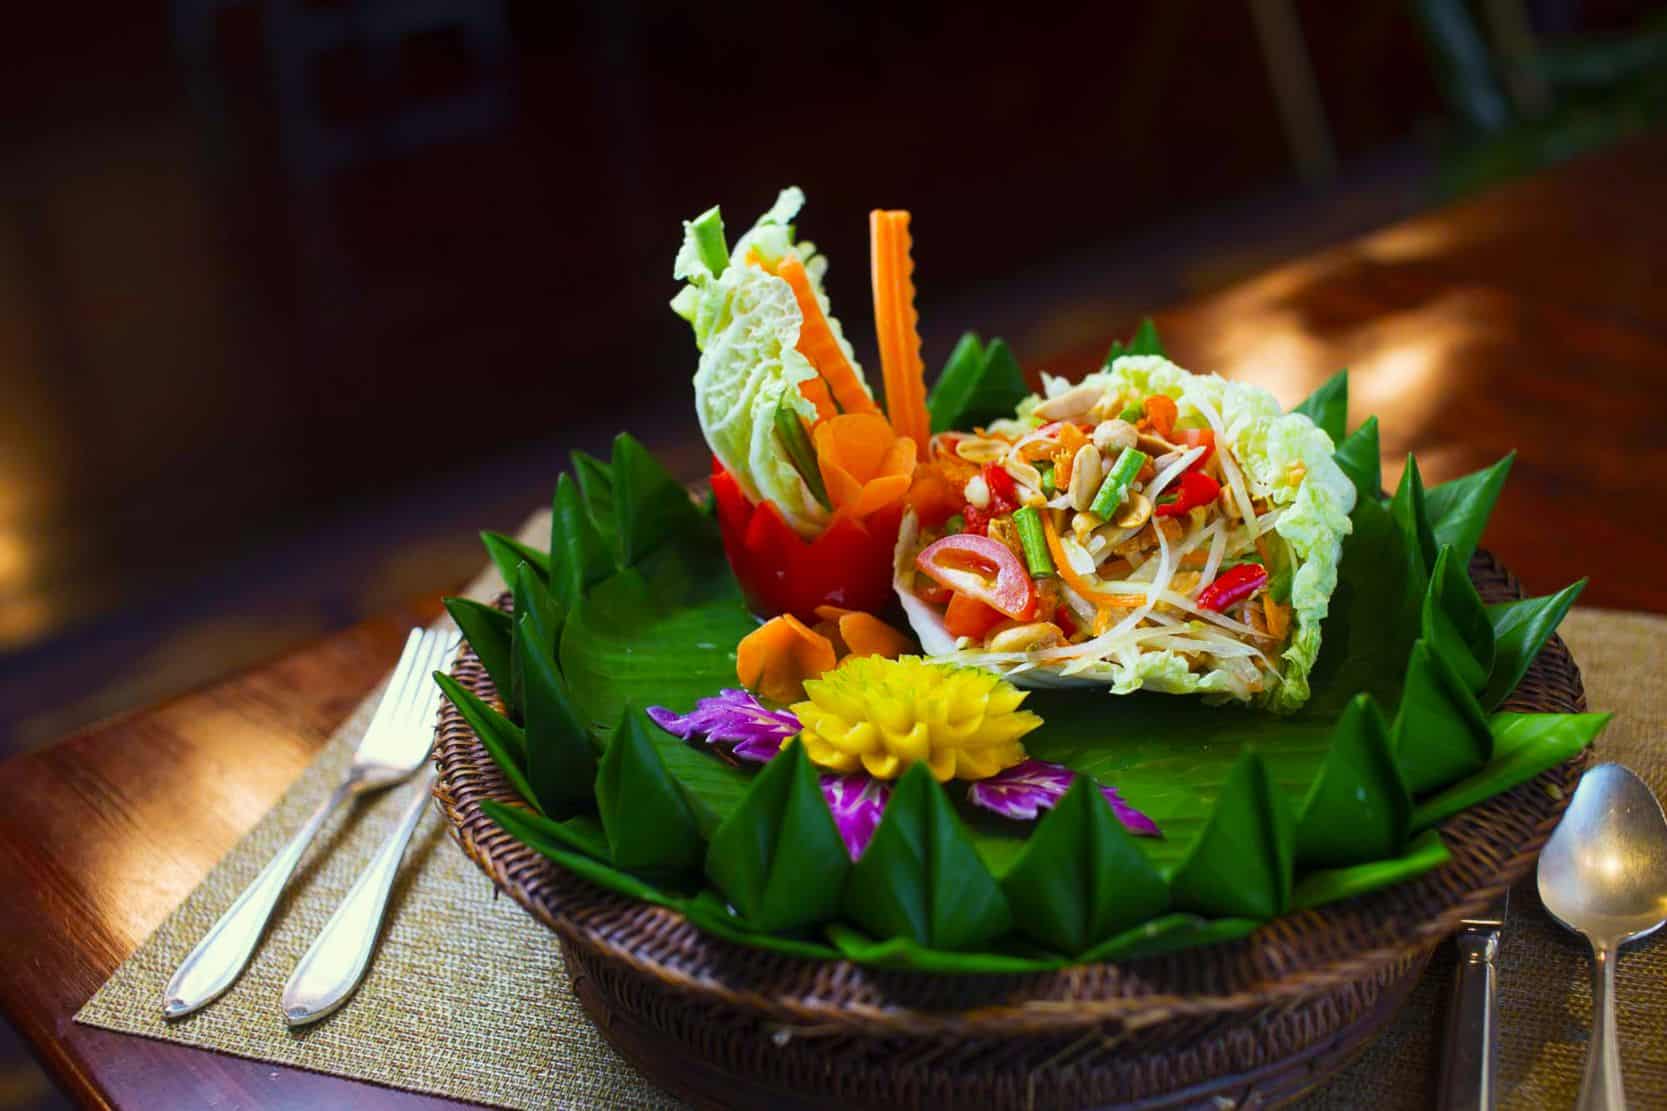 مطعم بينجارونغ التايلاندي يعين ويتشيت بانيو كبيرا للطهاة